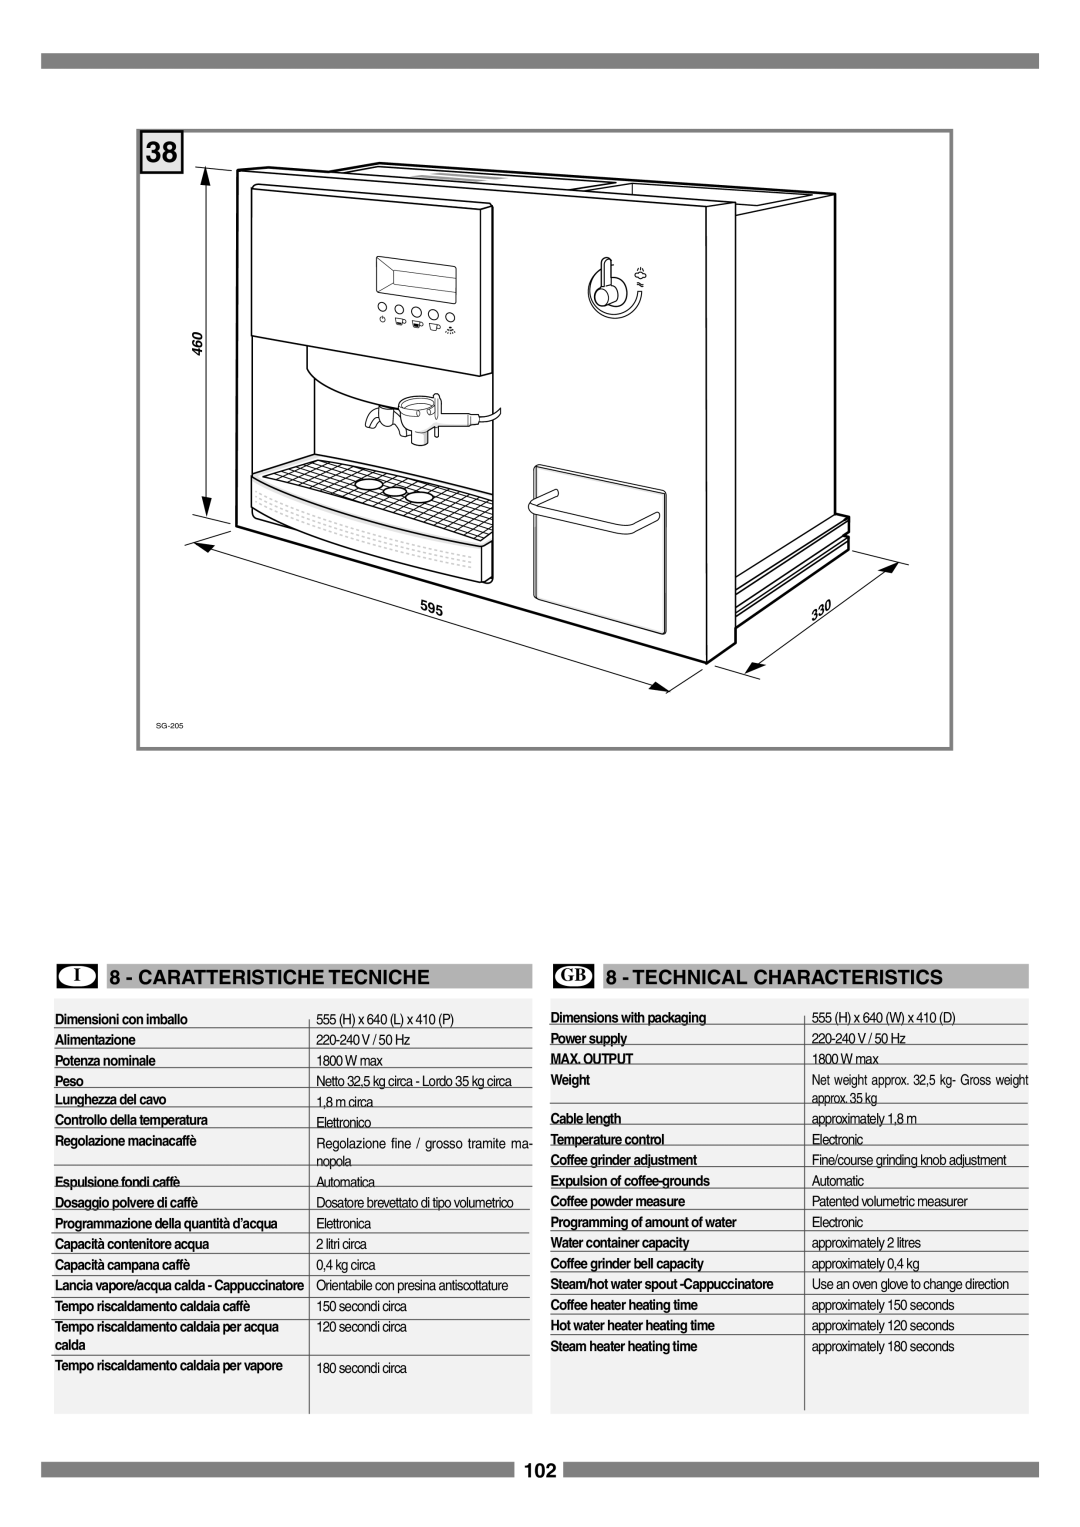 Smeg SCM1 manual I 8 - CARATTERISTICHE TECNICHE, GB 8 - TECHNICAL CHARACTERISTICS 